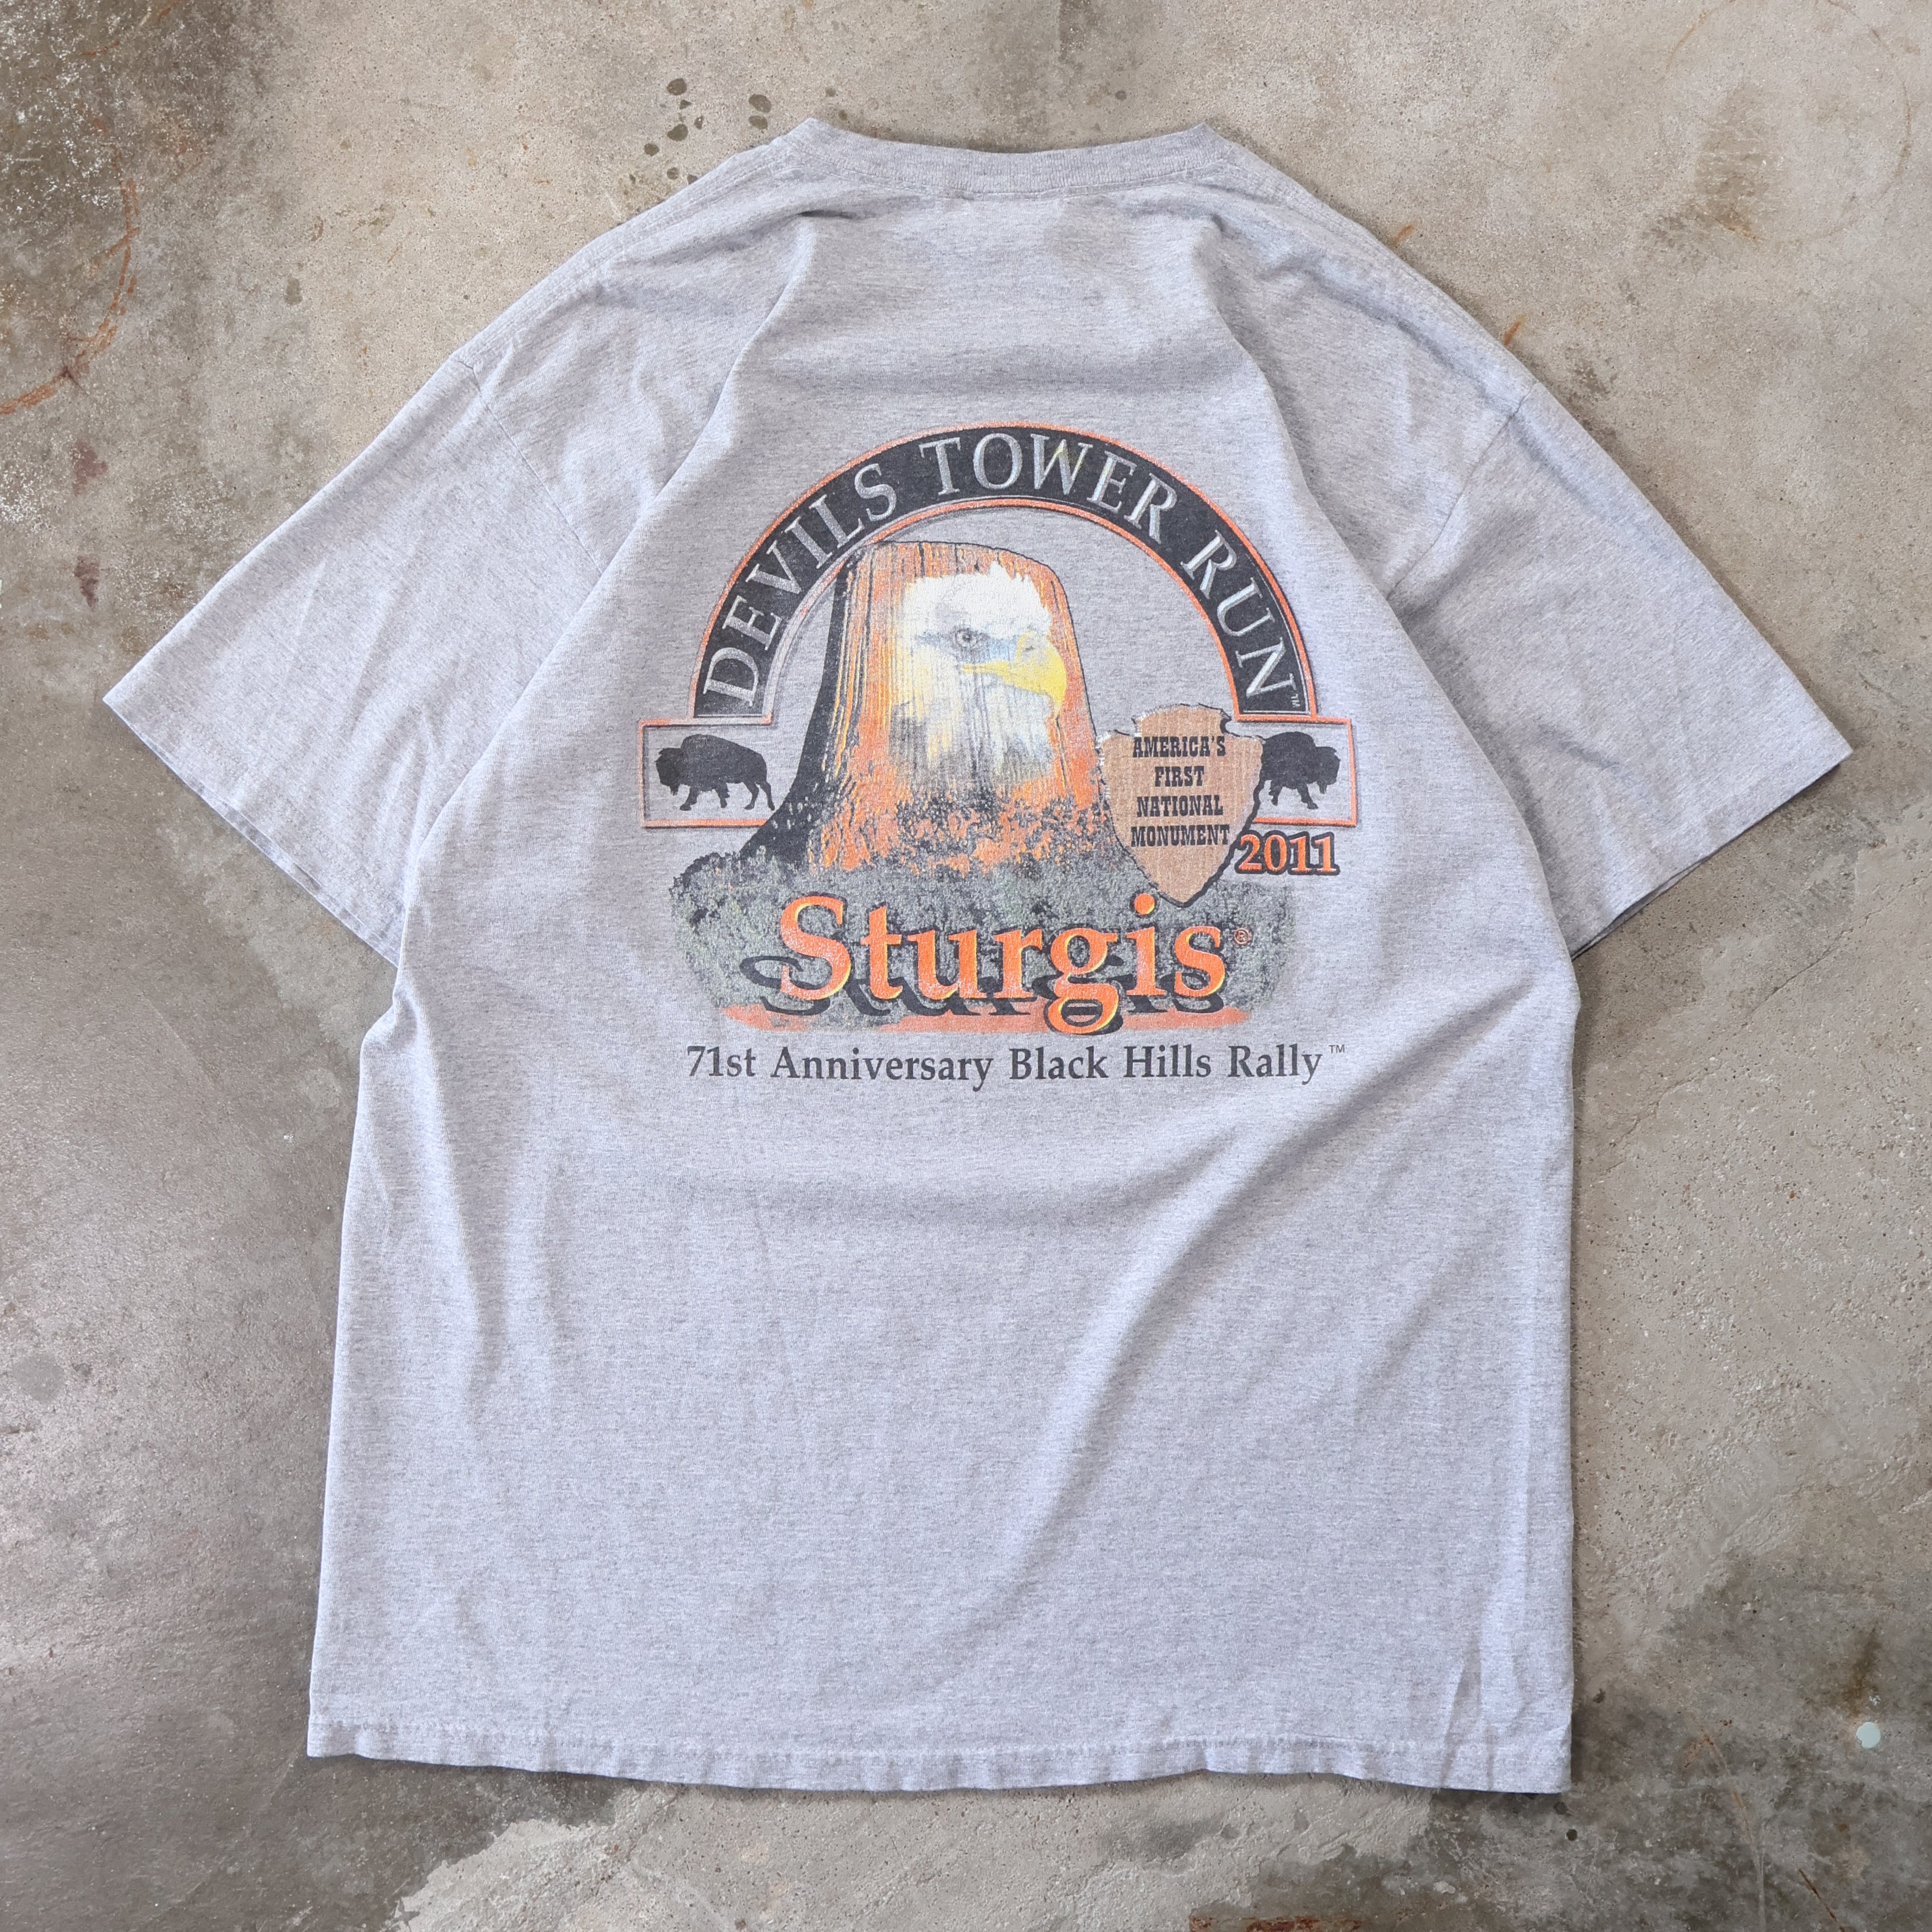 Sturgis Devils Tower Run 2011 T-Shirt (XL)